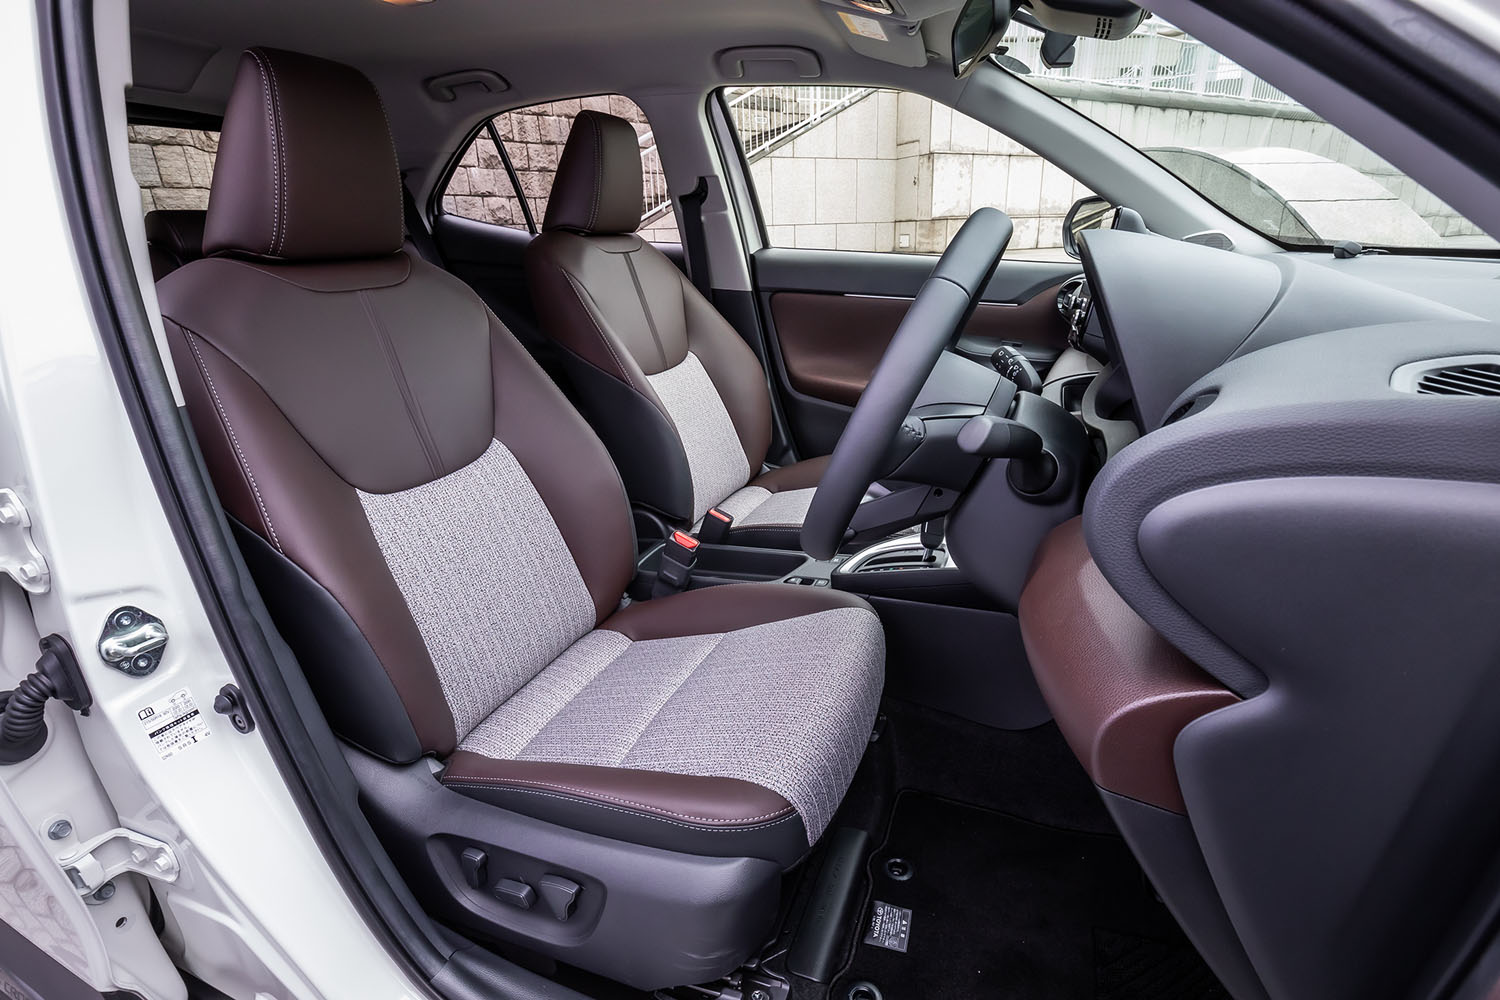 ブラウン系のカラーを用いた合皮とツイード調ファブリックのコンビネーションシートは、「ハイブリッドZ」および「Z」グレードの専用アイテム。前席はヒーター機能を内蔵し、運転席には電動調整機構も備わっている。